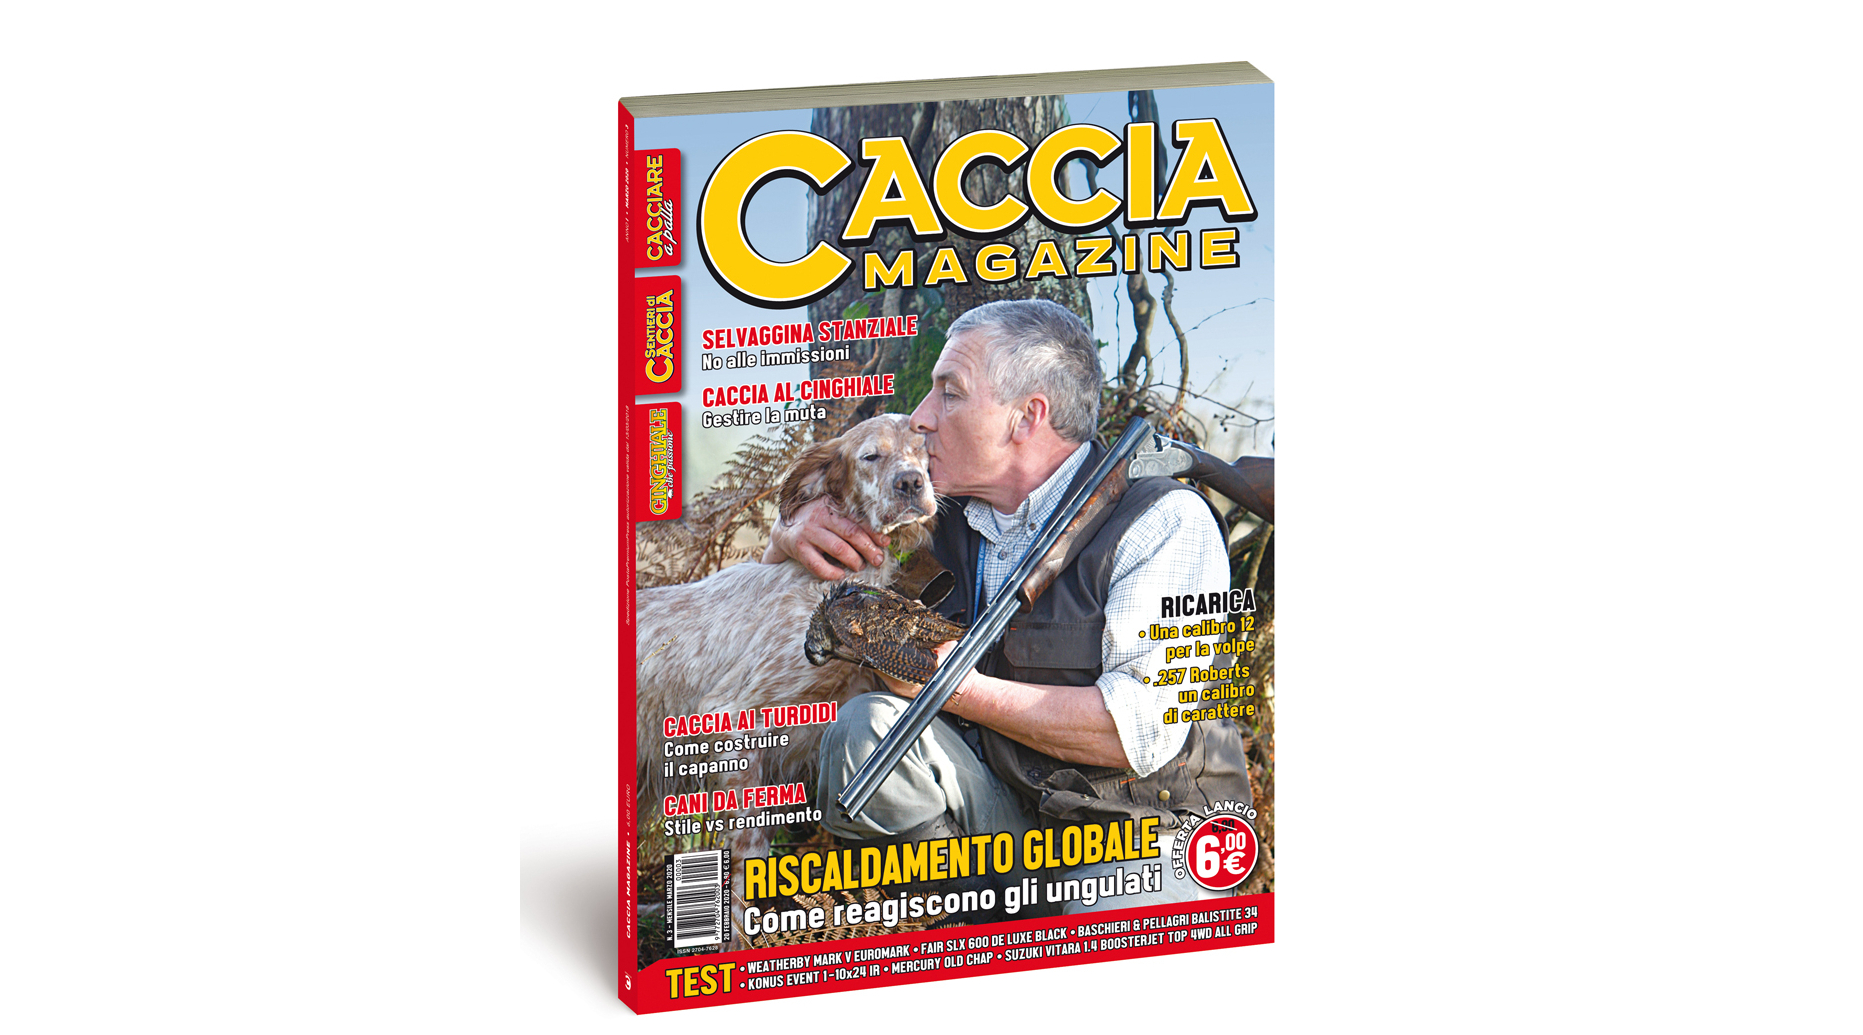 Caccia Magazine marzo 2020 in edicola dal 20 febbraio